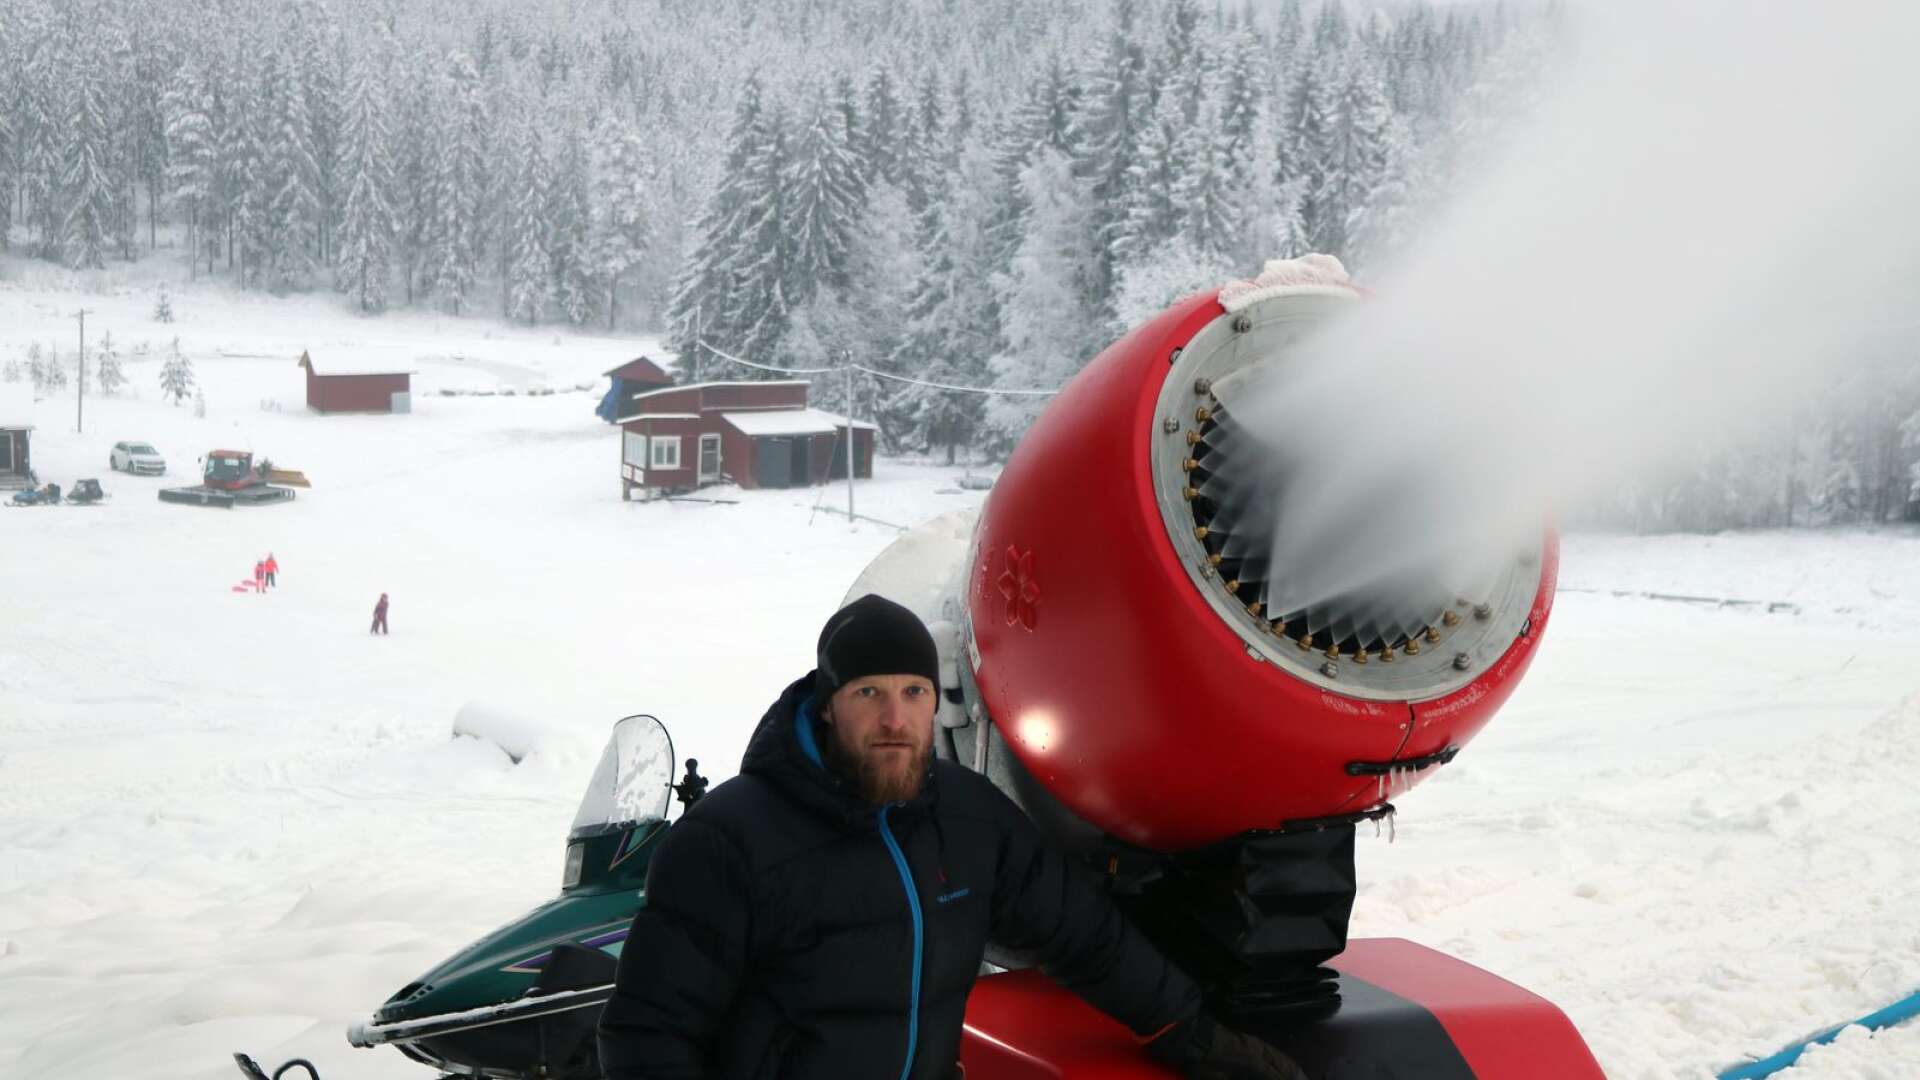 Krister Johansson, ordförande för Lesjöfors slalomklubb, berättar att de hoppas kunna öppna backen framåt jul. Här ses han på arkivbild från 2018 då klubben införskaffat ny snökanon.